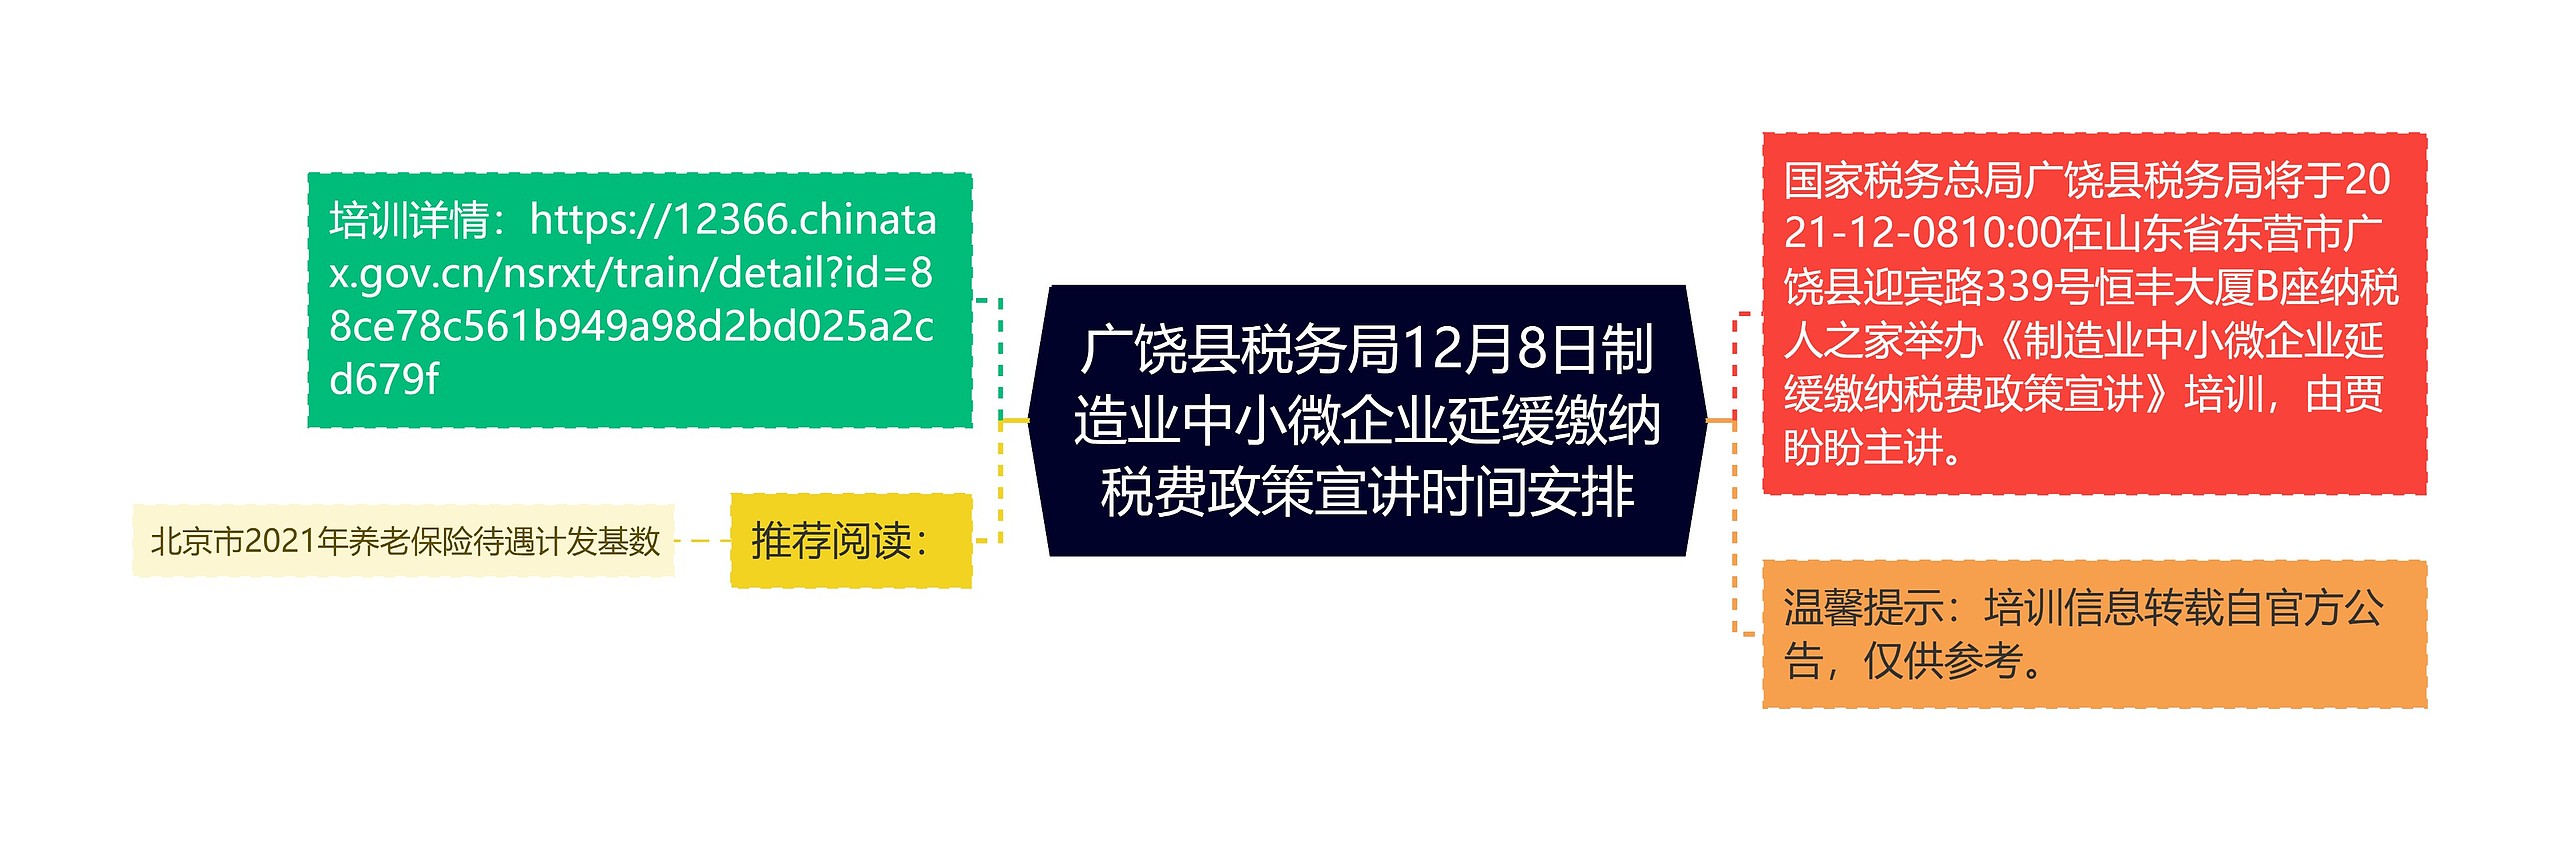 广饶县税务局12月8日制造业中小微企业延缓缴纳税费政策宣讲时间安排